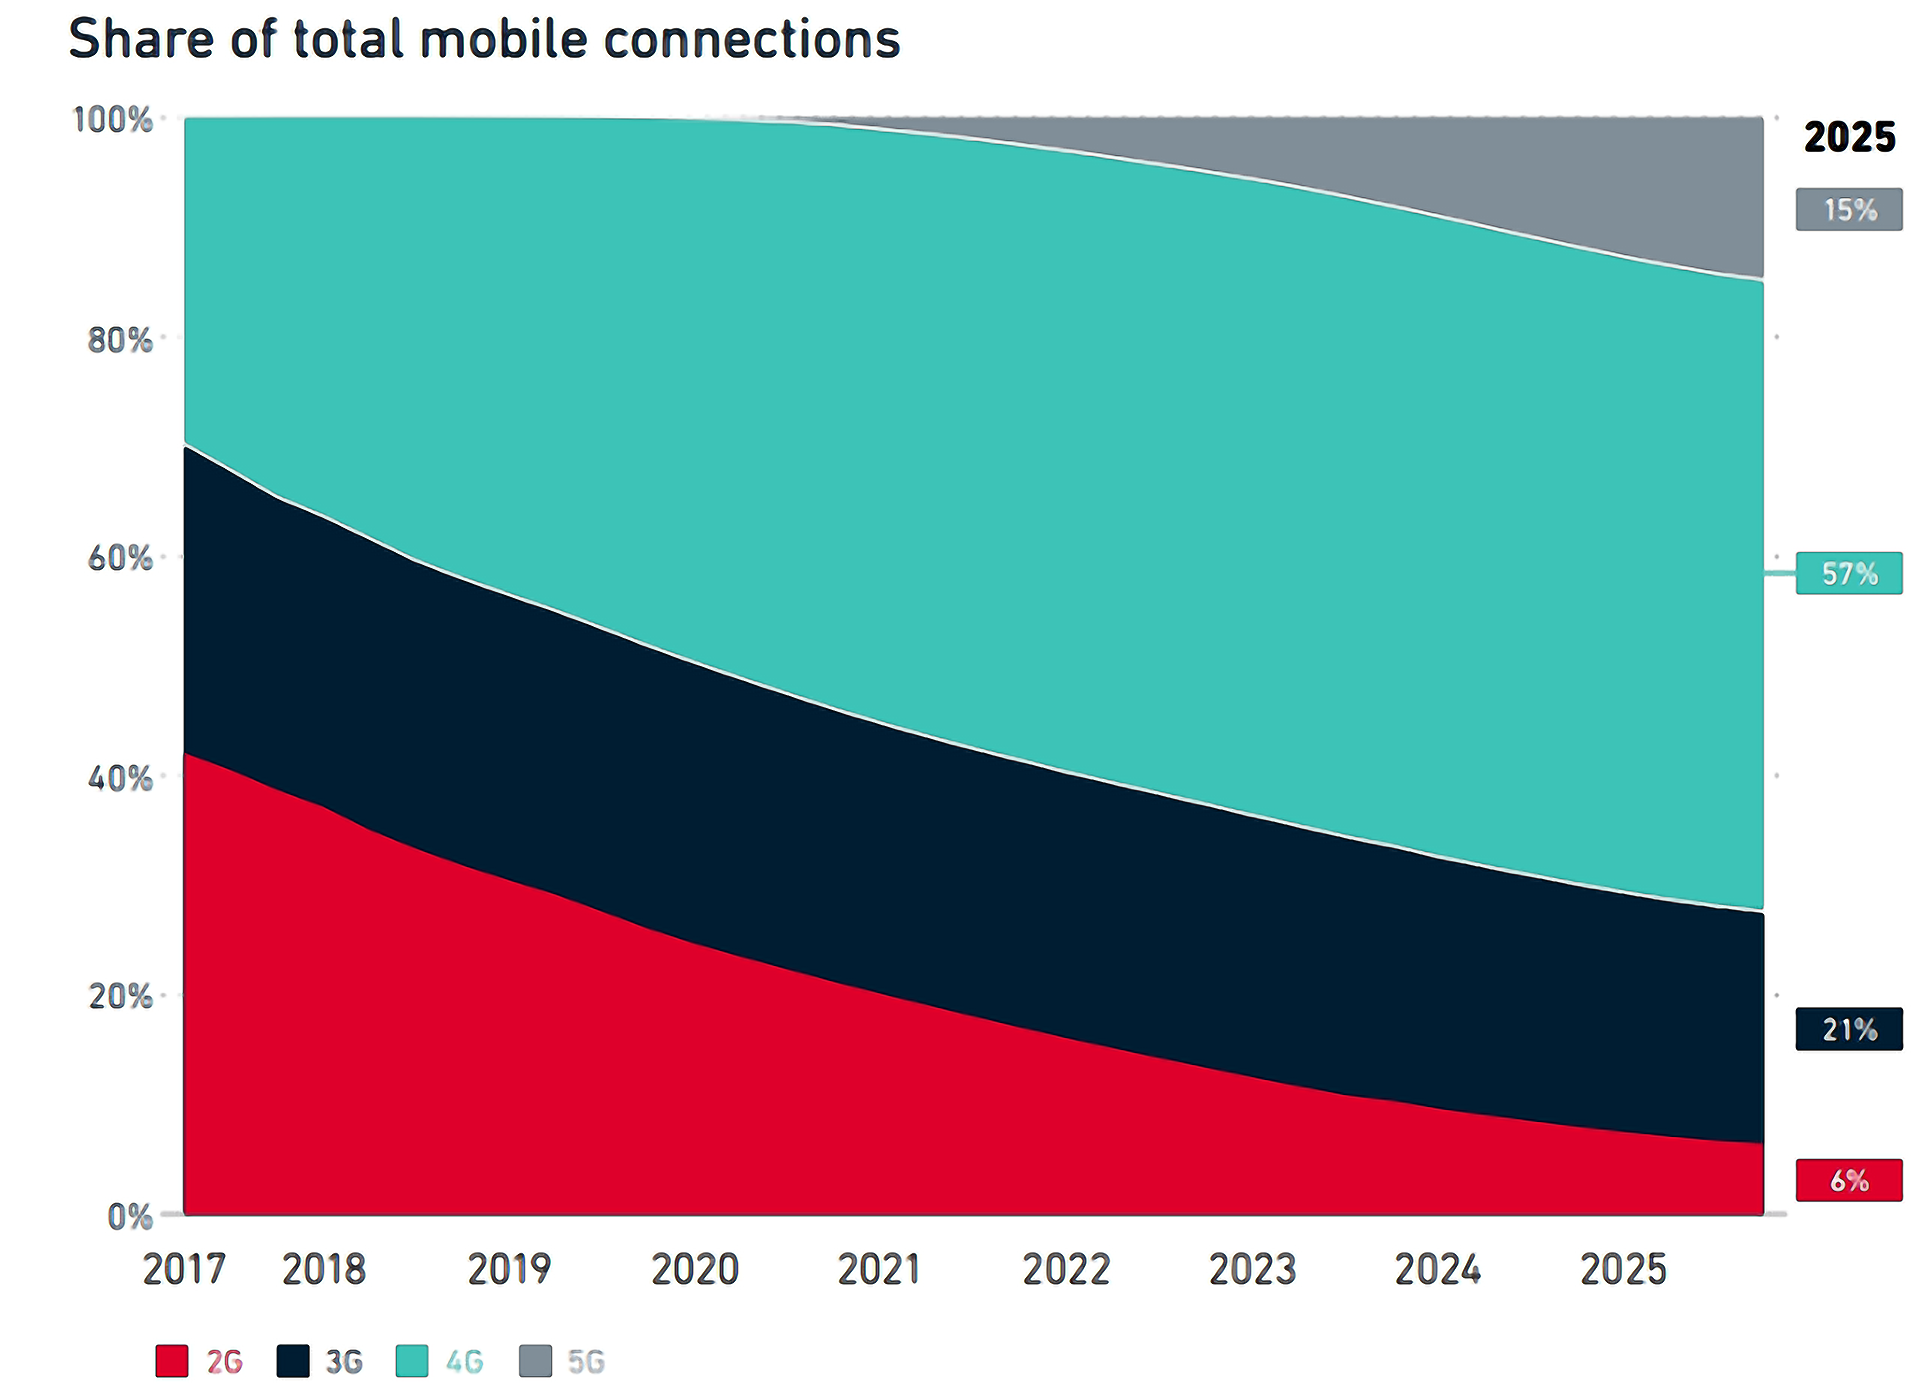 Dünya genelinde 2019 yılında 25 operatörünün 5G hizmeti sunmaya başlaması ve 2020 yılında da bu sayının iki katına ulaşması bekleniyor. Dünya GSM Birliği GSMA tarafından hazırlanan ‘Mobil Ekonomi 2019’ başlıklı rapora göre ise 2025’te 5G’nin küresel mobil bağlantıların %15’ini oluşturacağı öngörülüyor